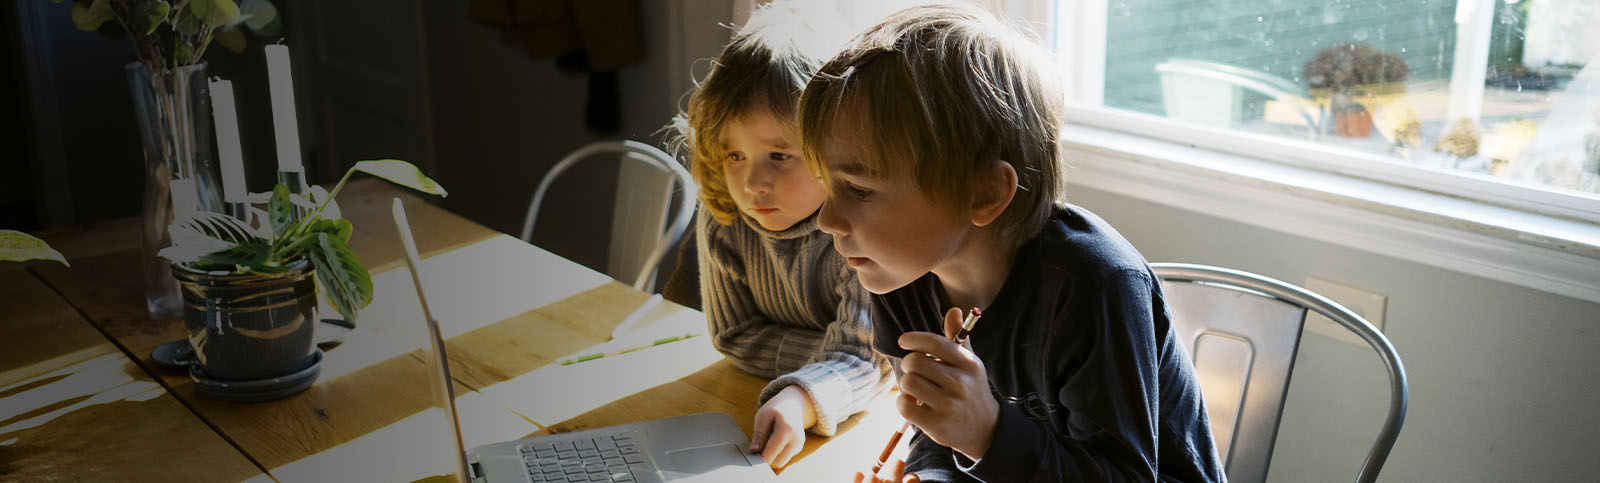 Kids in morning light sitting at table doing homework on laptop.